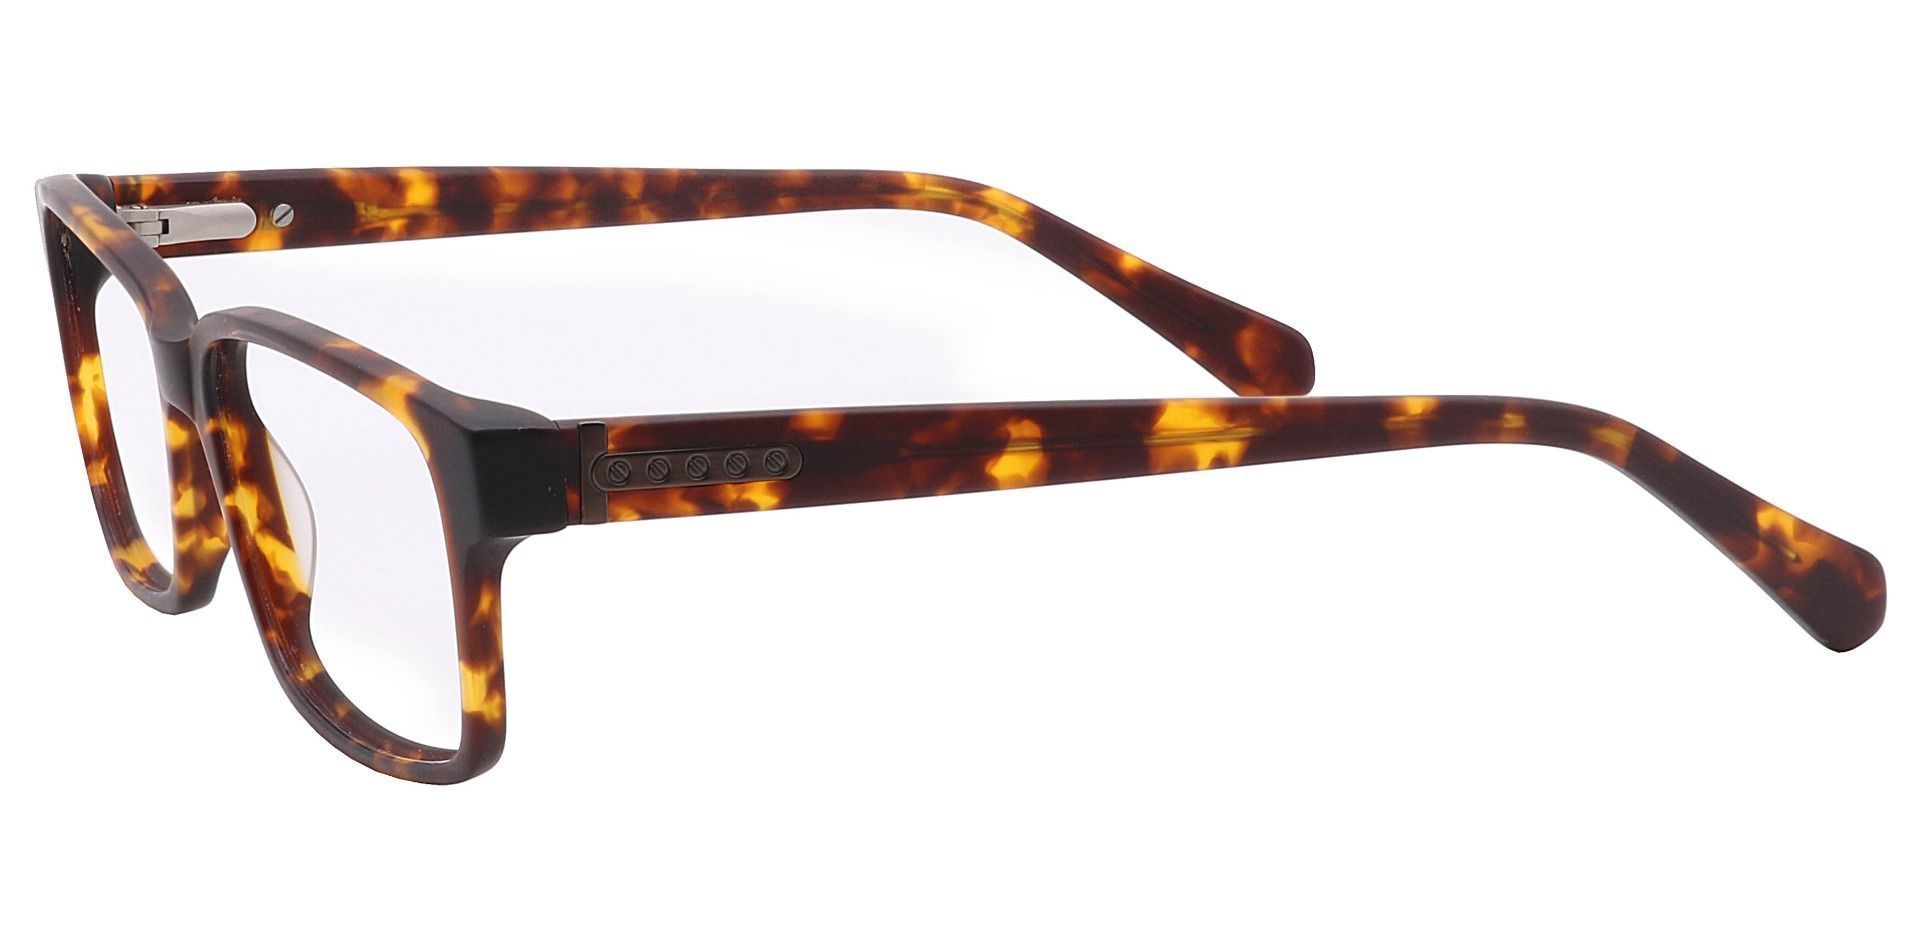 Clifford Rectangle Eyeglasses Frame - Tortoise